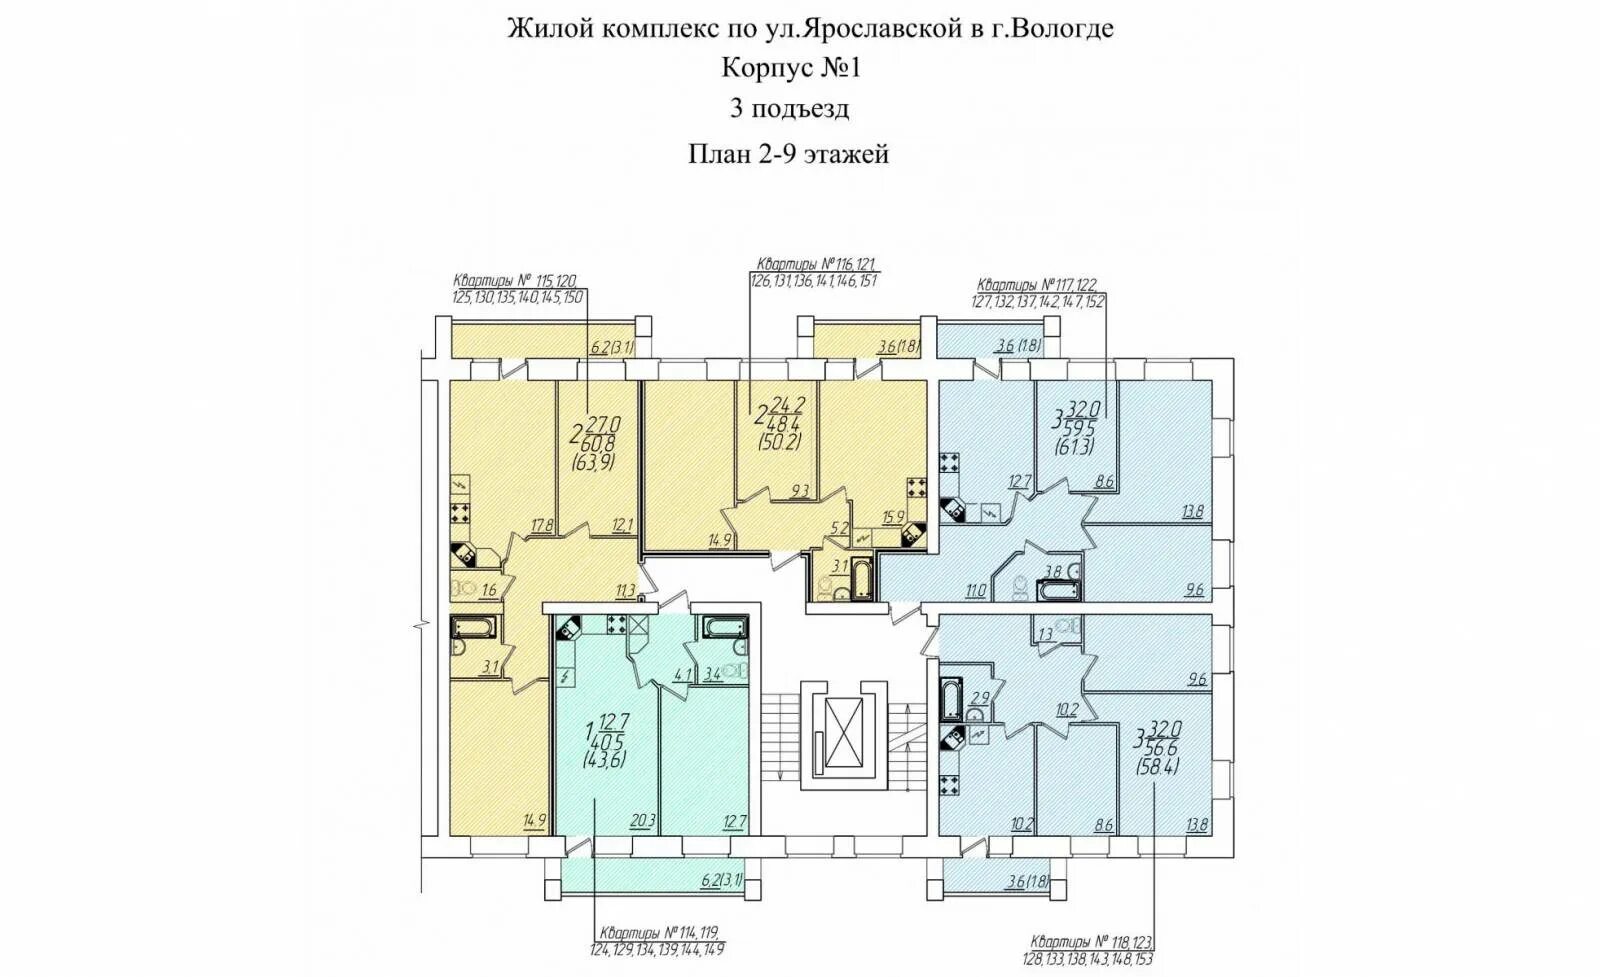 4 Квартиры на этаже планировка. Схема подъезда жилого дома. План номеров квартир на этаже. 3 Квартиры на этаже планировка. Квартиры ярославль пятерка